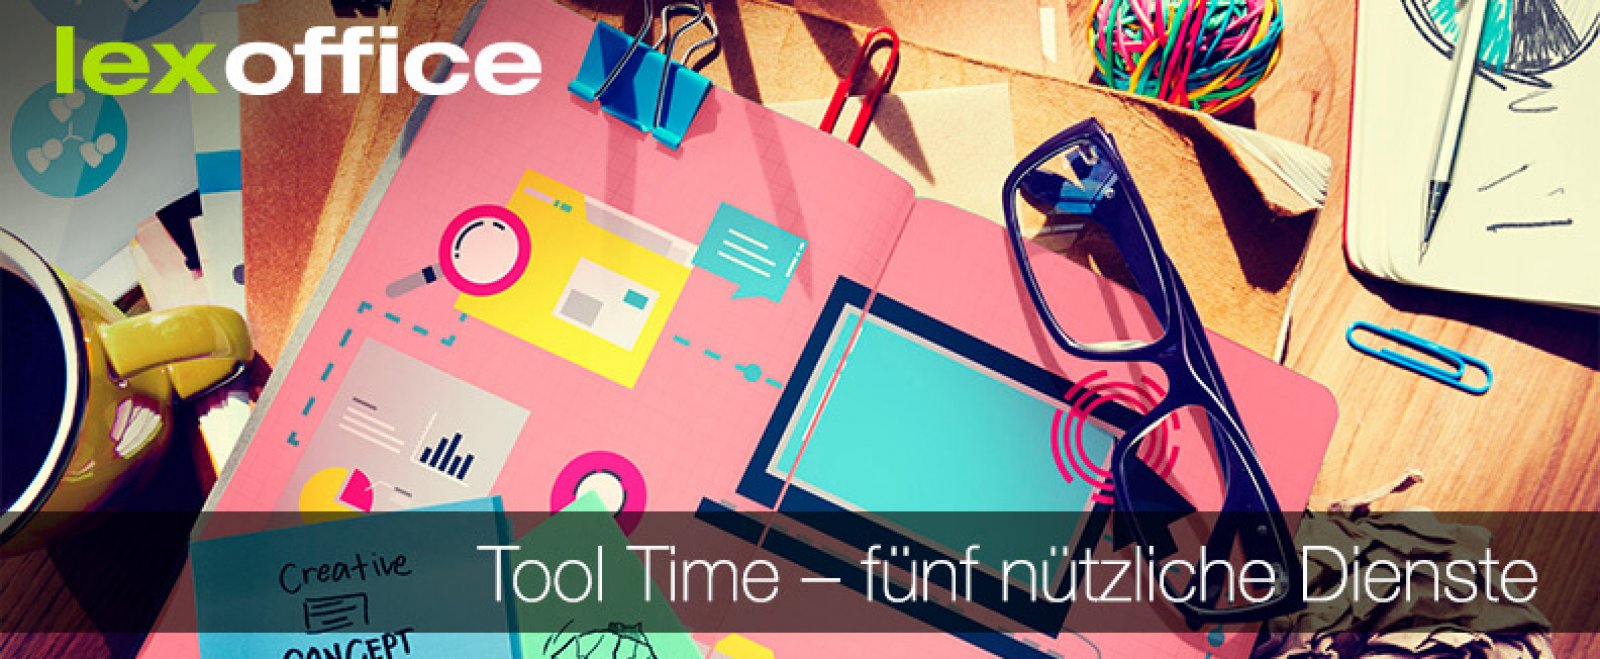 Tool Time: 5 nützliche Dienste für Startups und Gründer